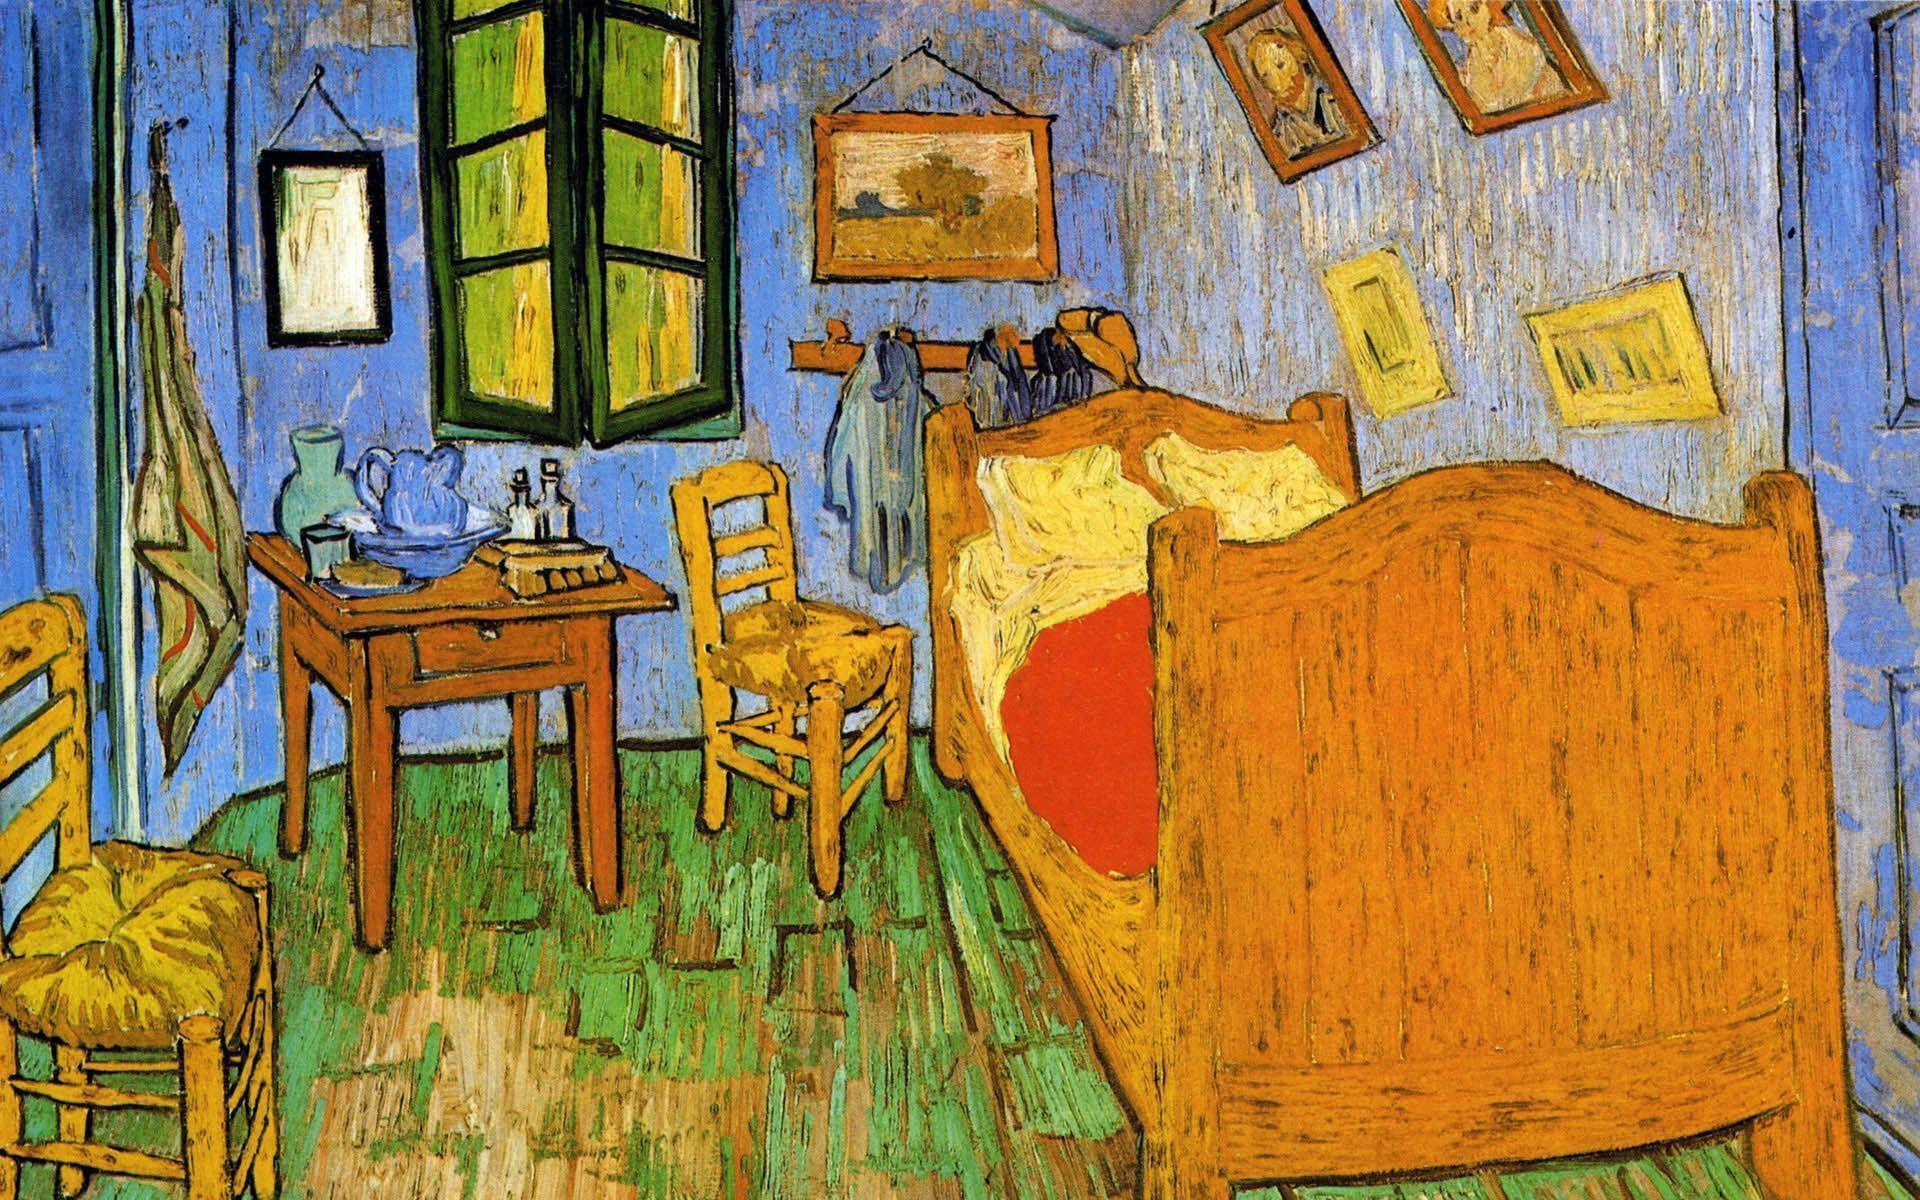 Fonds d&;écran Van Gogh, tous les wallpaper Van Gogh